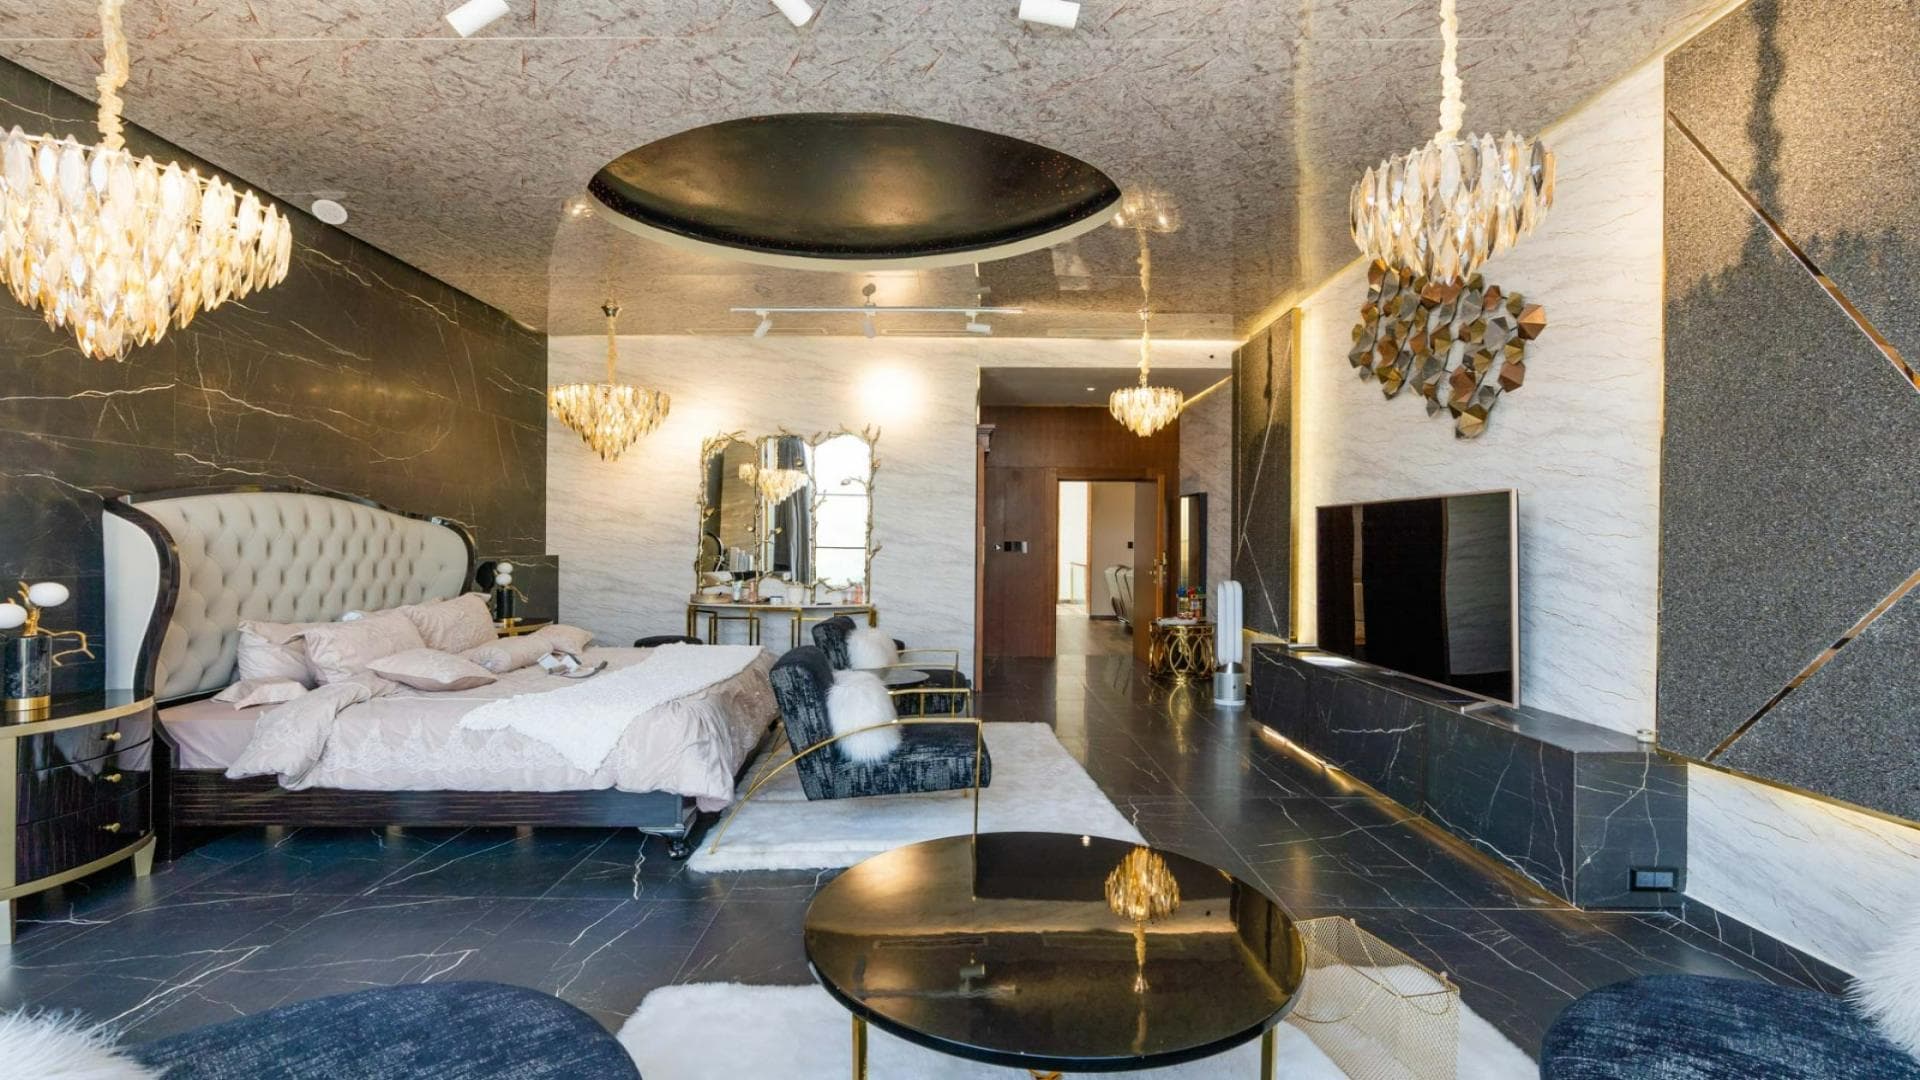 5 Bedroom Villa For Sale Azizi Riviera 3 Lp37620 11425174a952c700.jpg